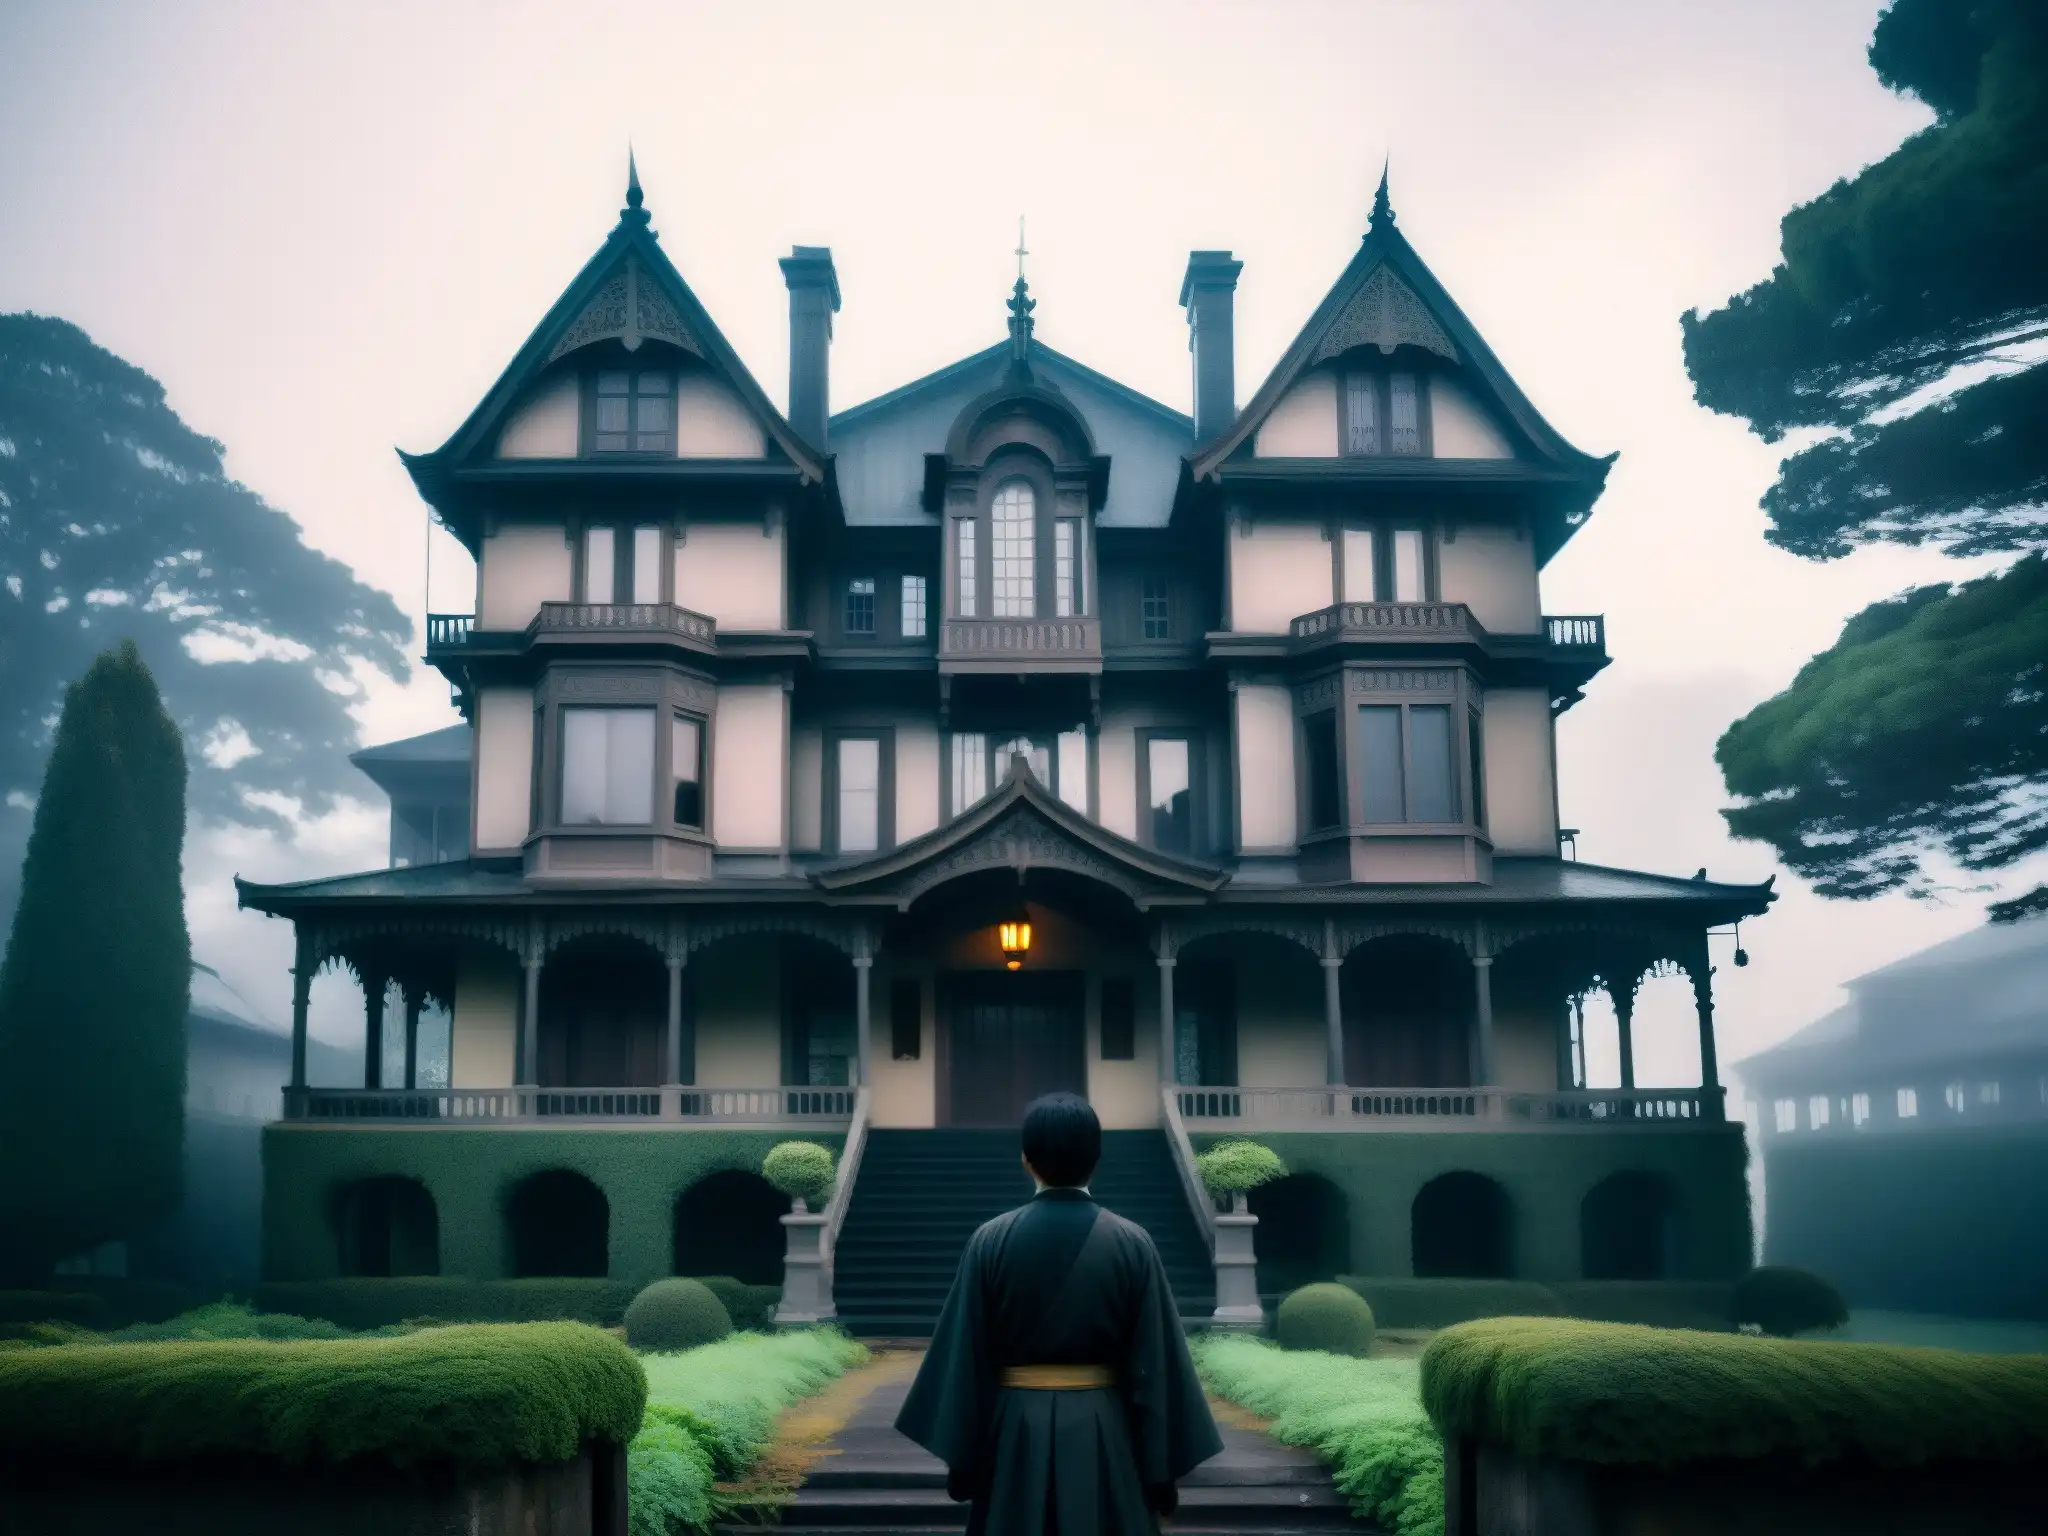 Silueta contempla la escalofriante mansión Himuro en la neblina, evocando la psicología del miedo en Himuro Mansion